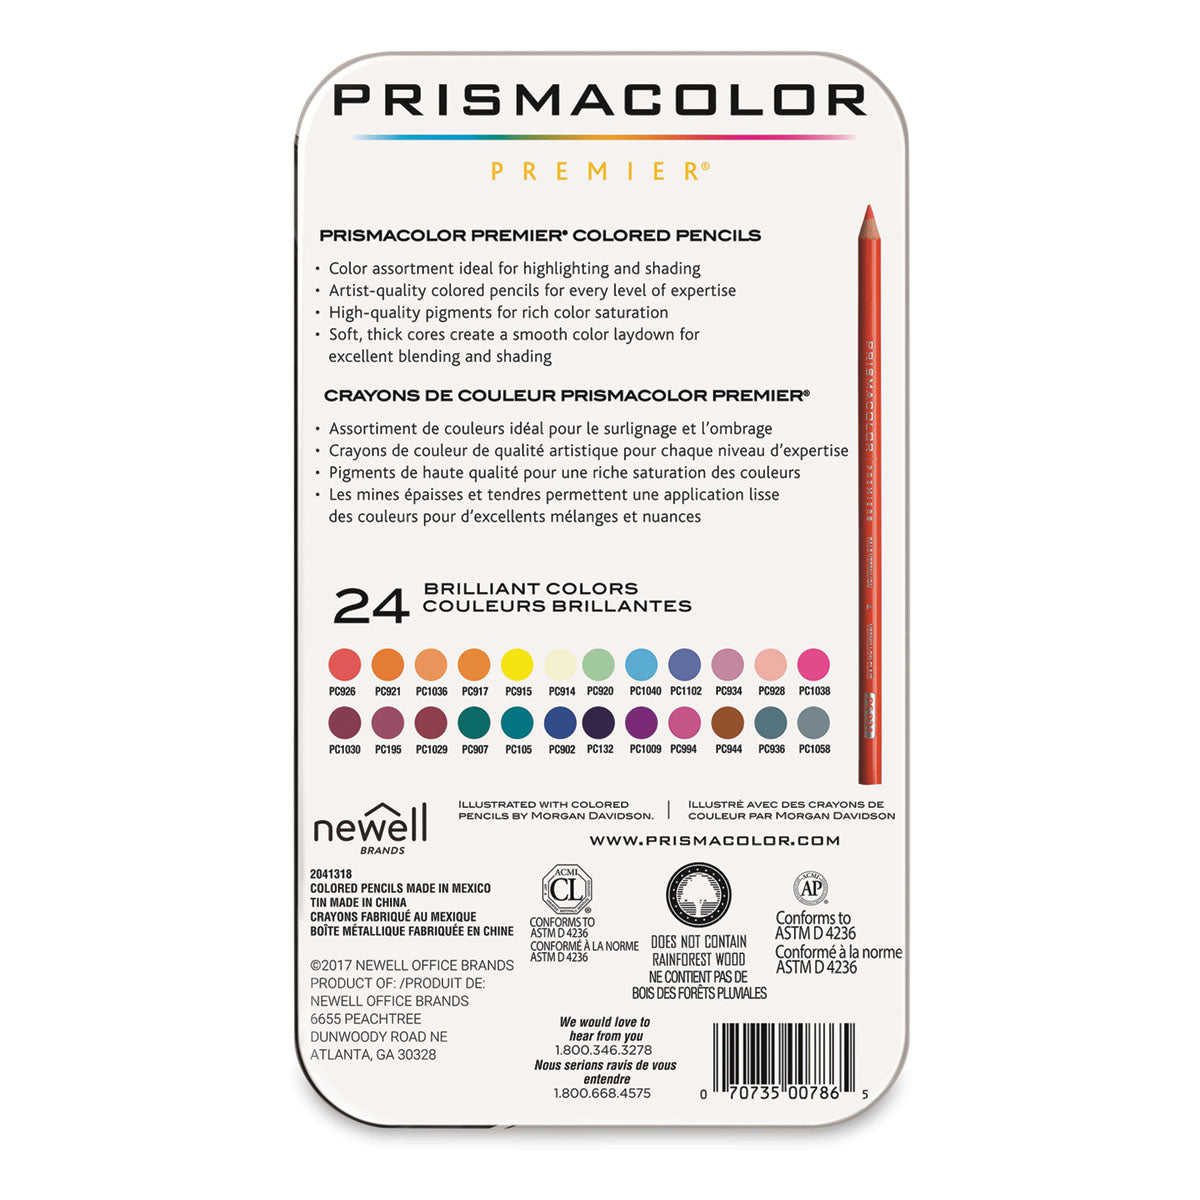 Prismacolor Premier, 24CT, lumeggiature e ombreggiature